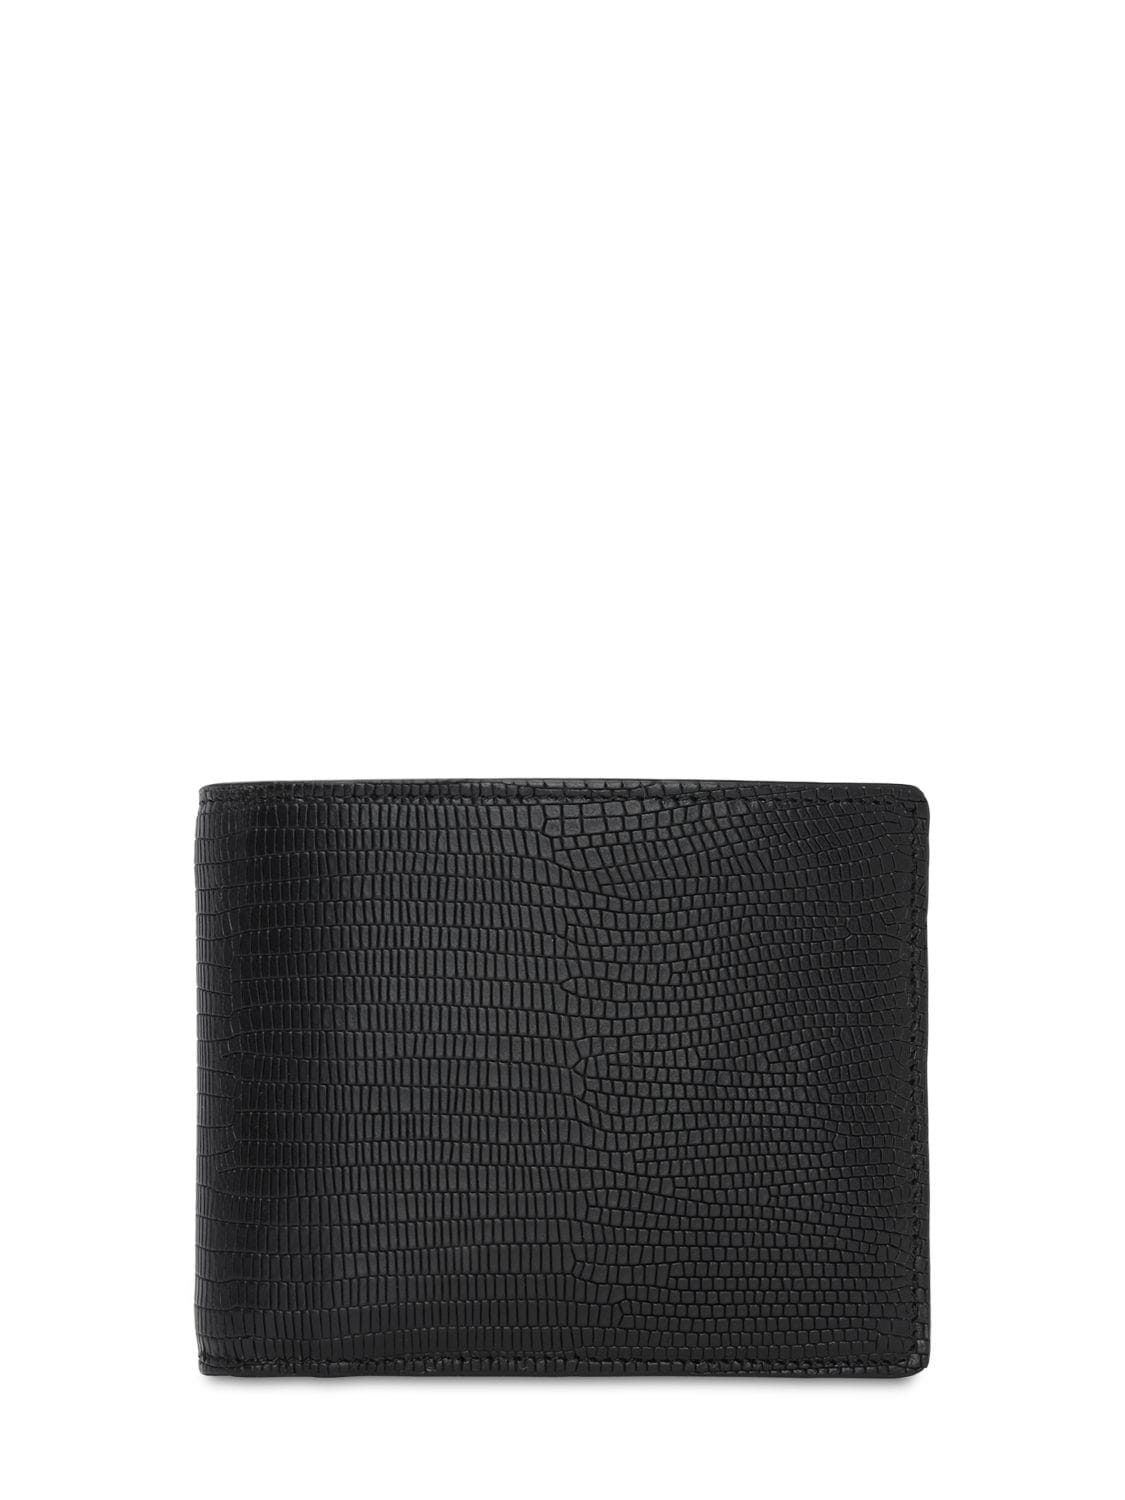 Maison Margiela Lizard Embossed Leather Billfold Wallet In Black